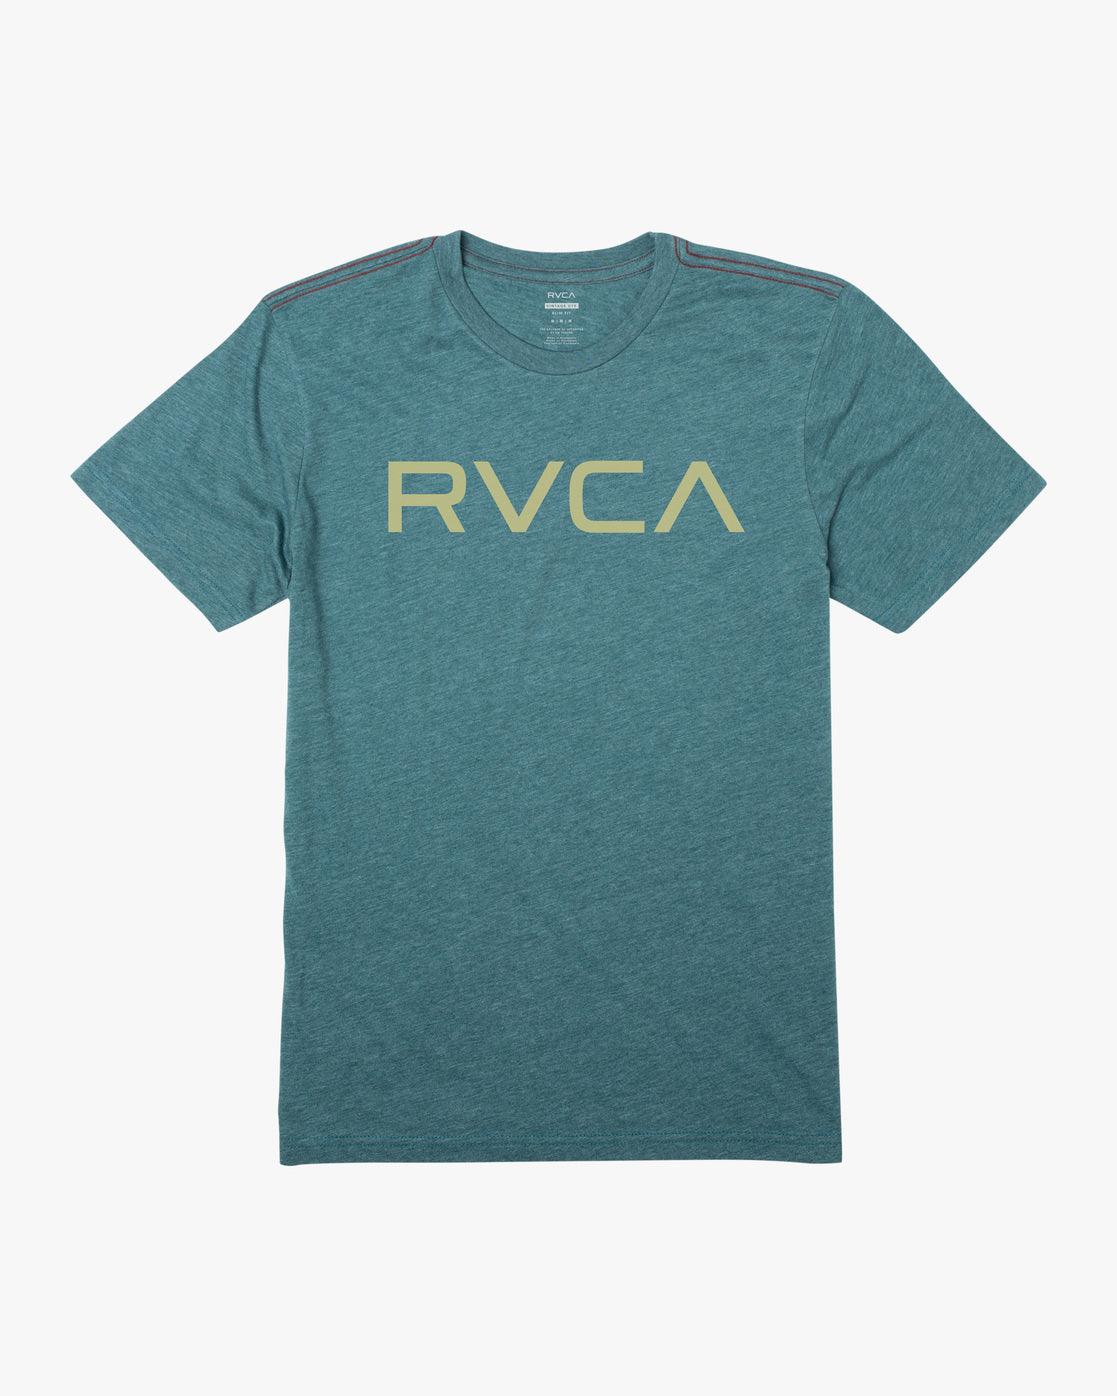 Big RVCA TShirt - SoHa Surf Shop